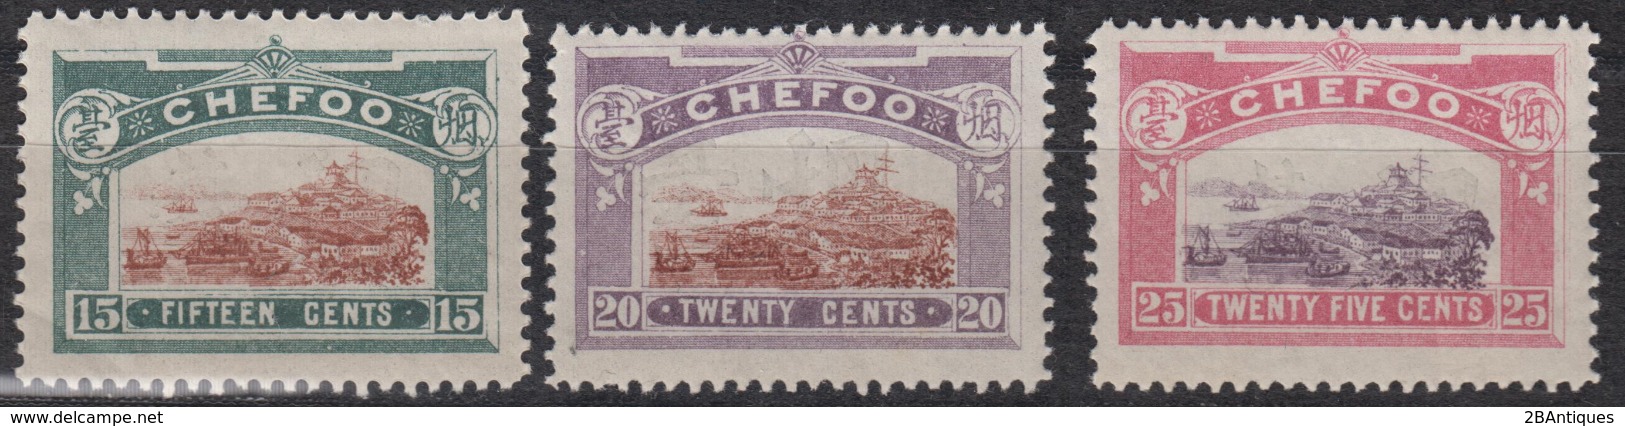 CHEFOO 1896 - Chefoo City MNH** OG COMPLETE SET! - Ongebruikt